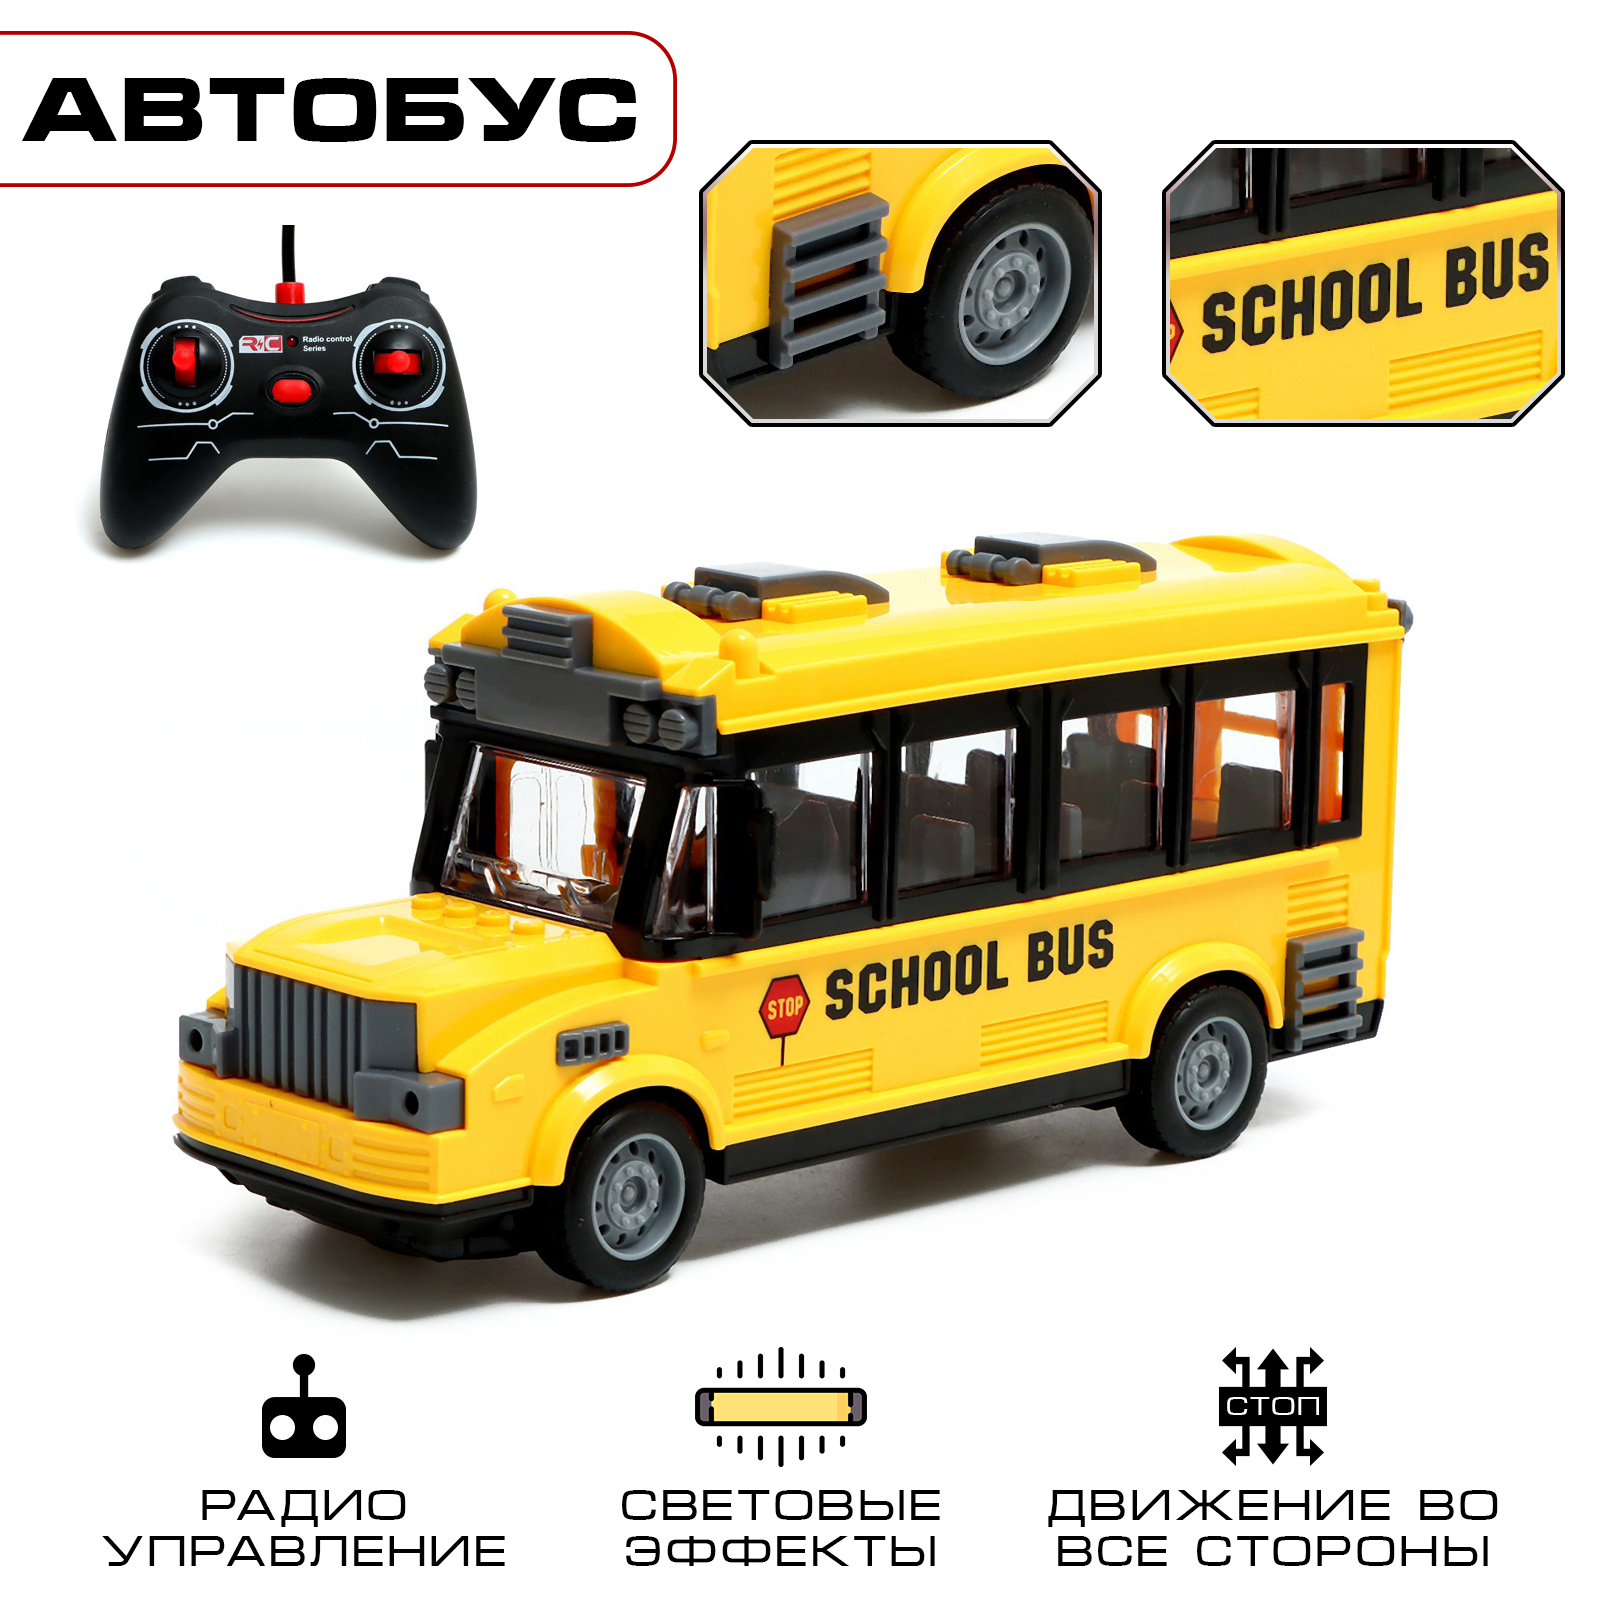 Автобус радиоуправляемый Школьный, свет, работает от батареек радиоуправляемый школьный автобус city bus school bus 1 30